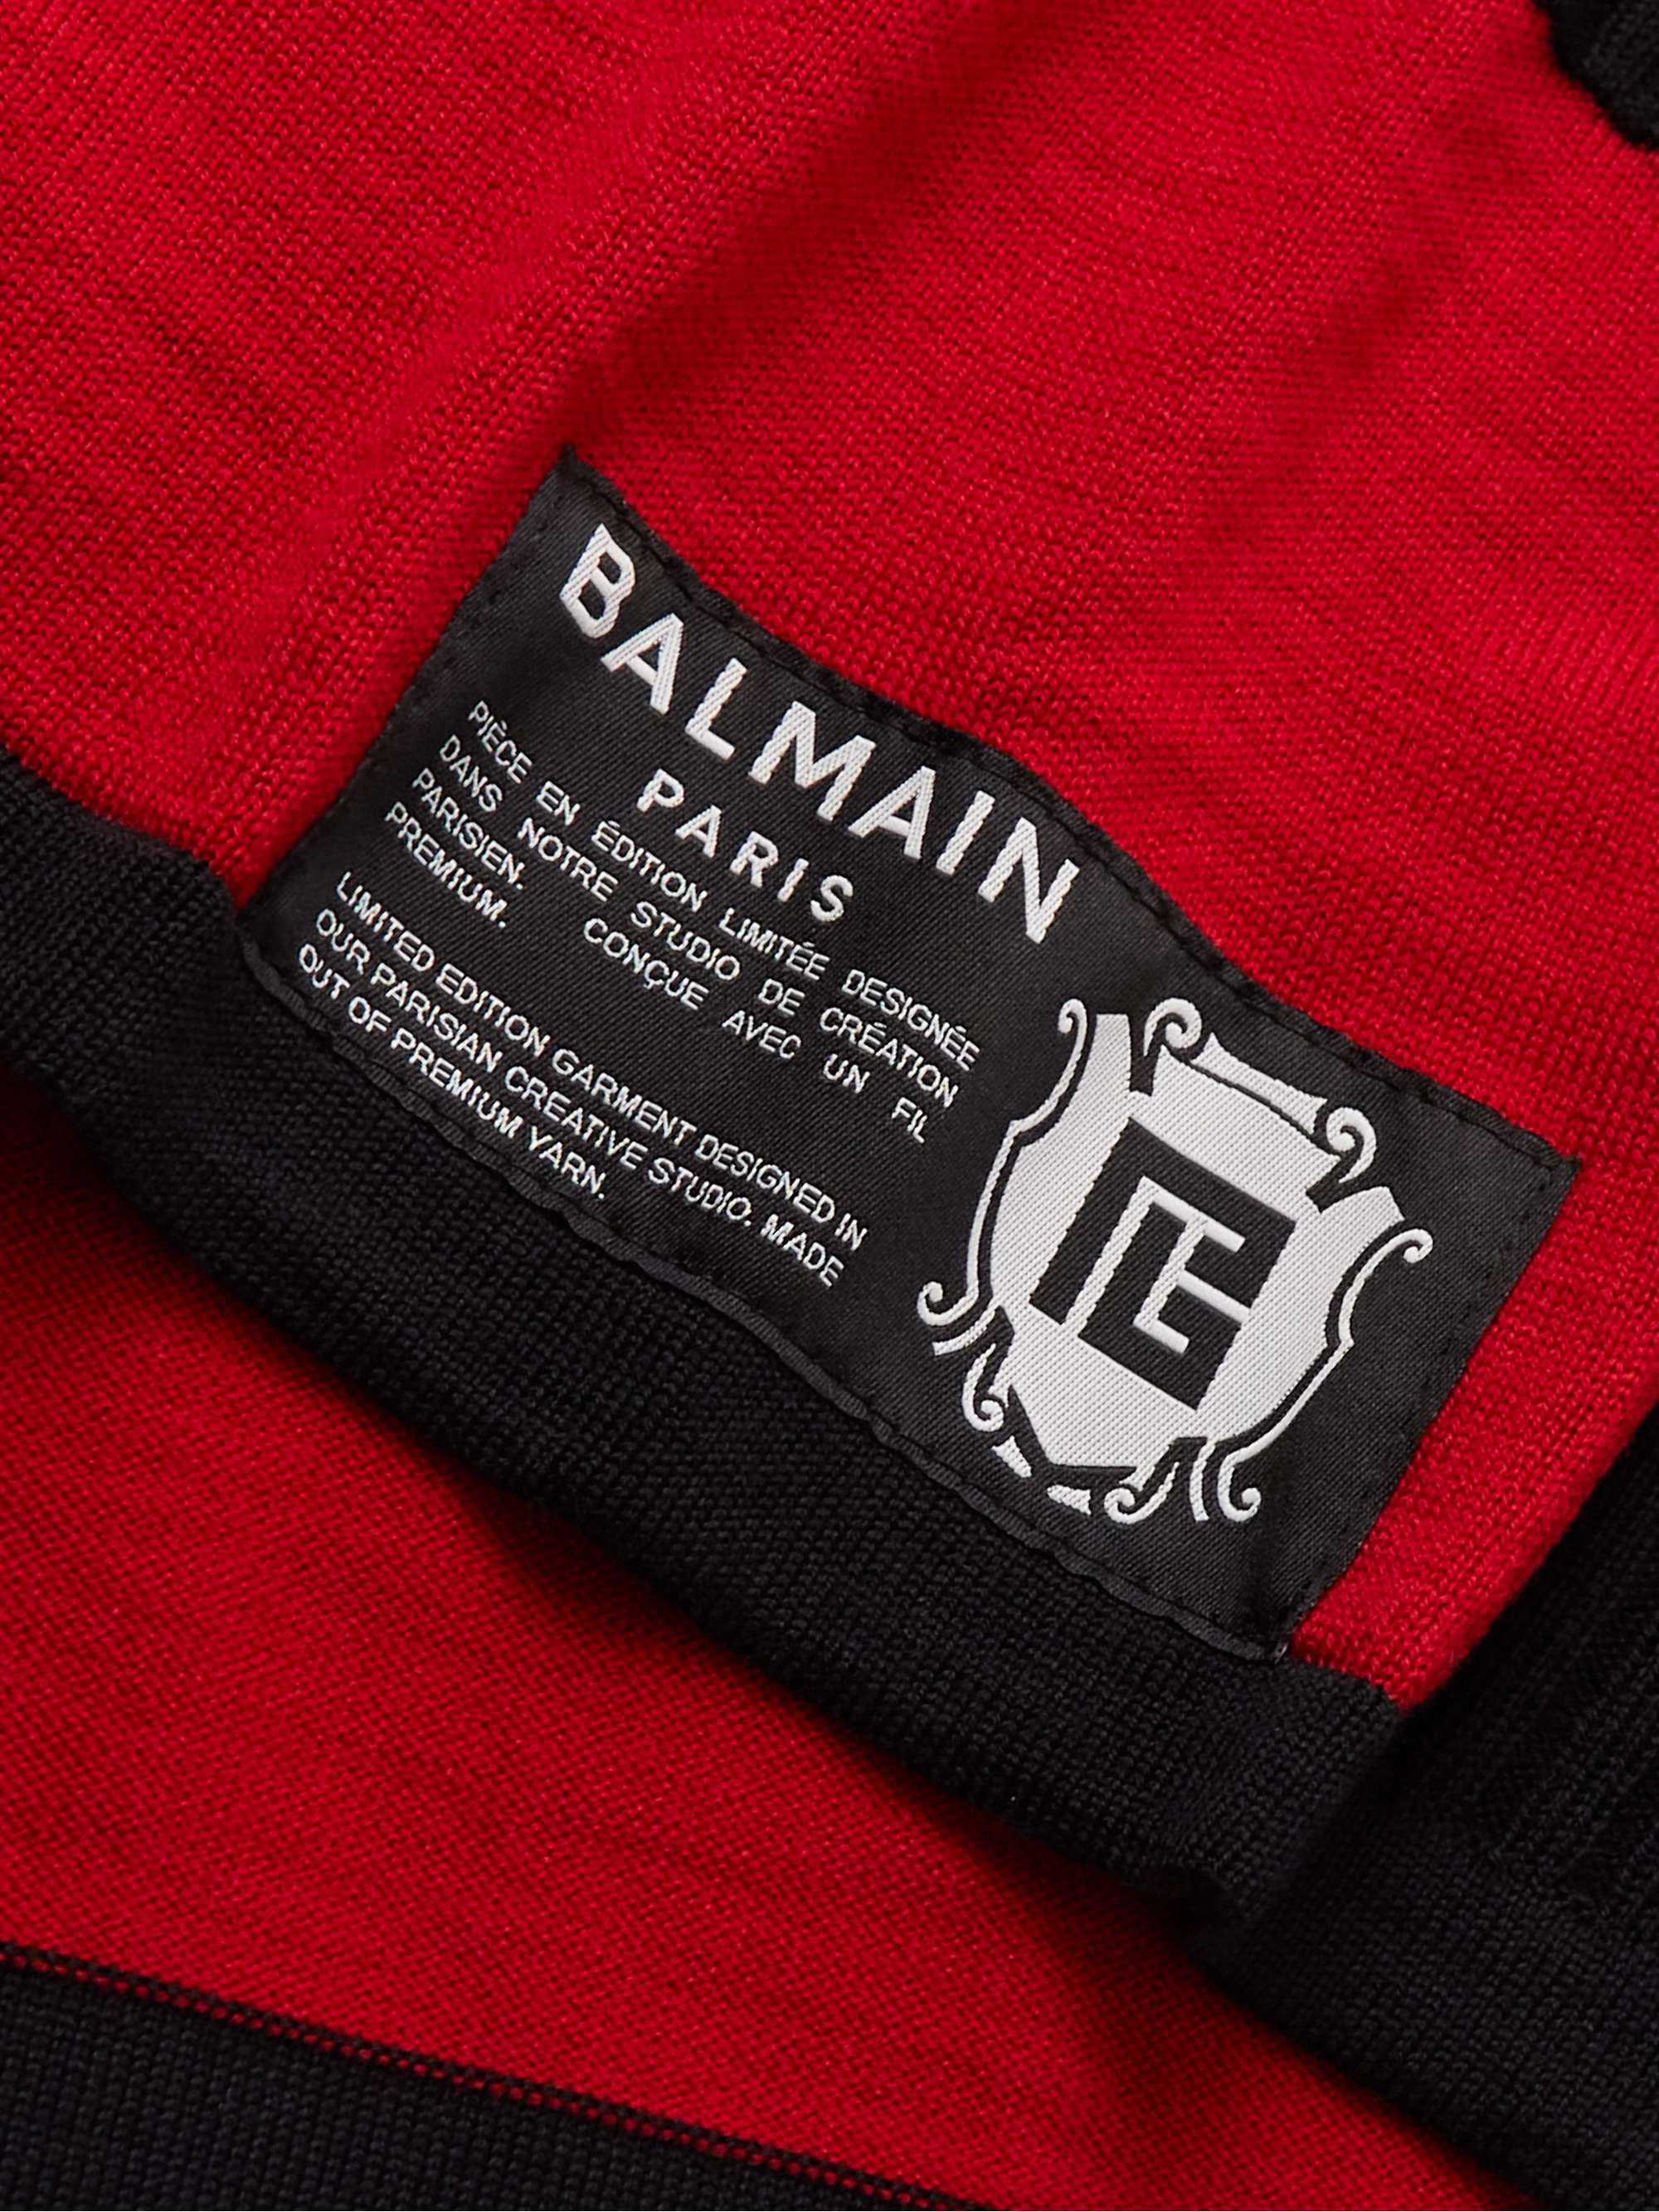 BALMAIN Striped Logo-Intarsia Wool Sweater